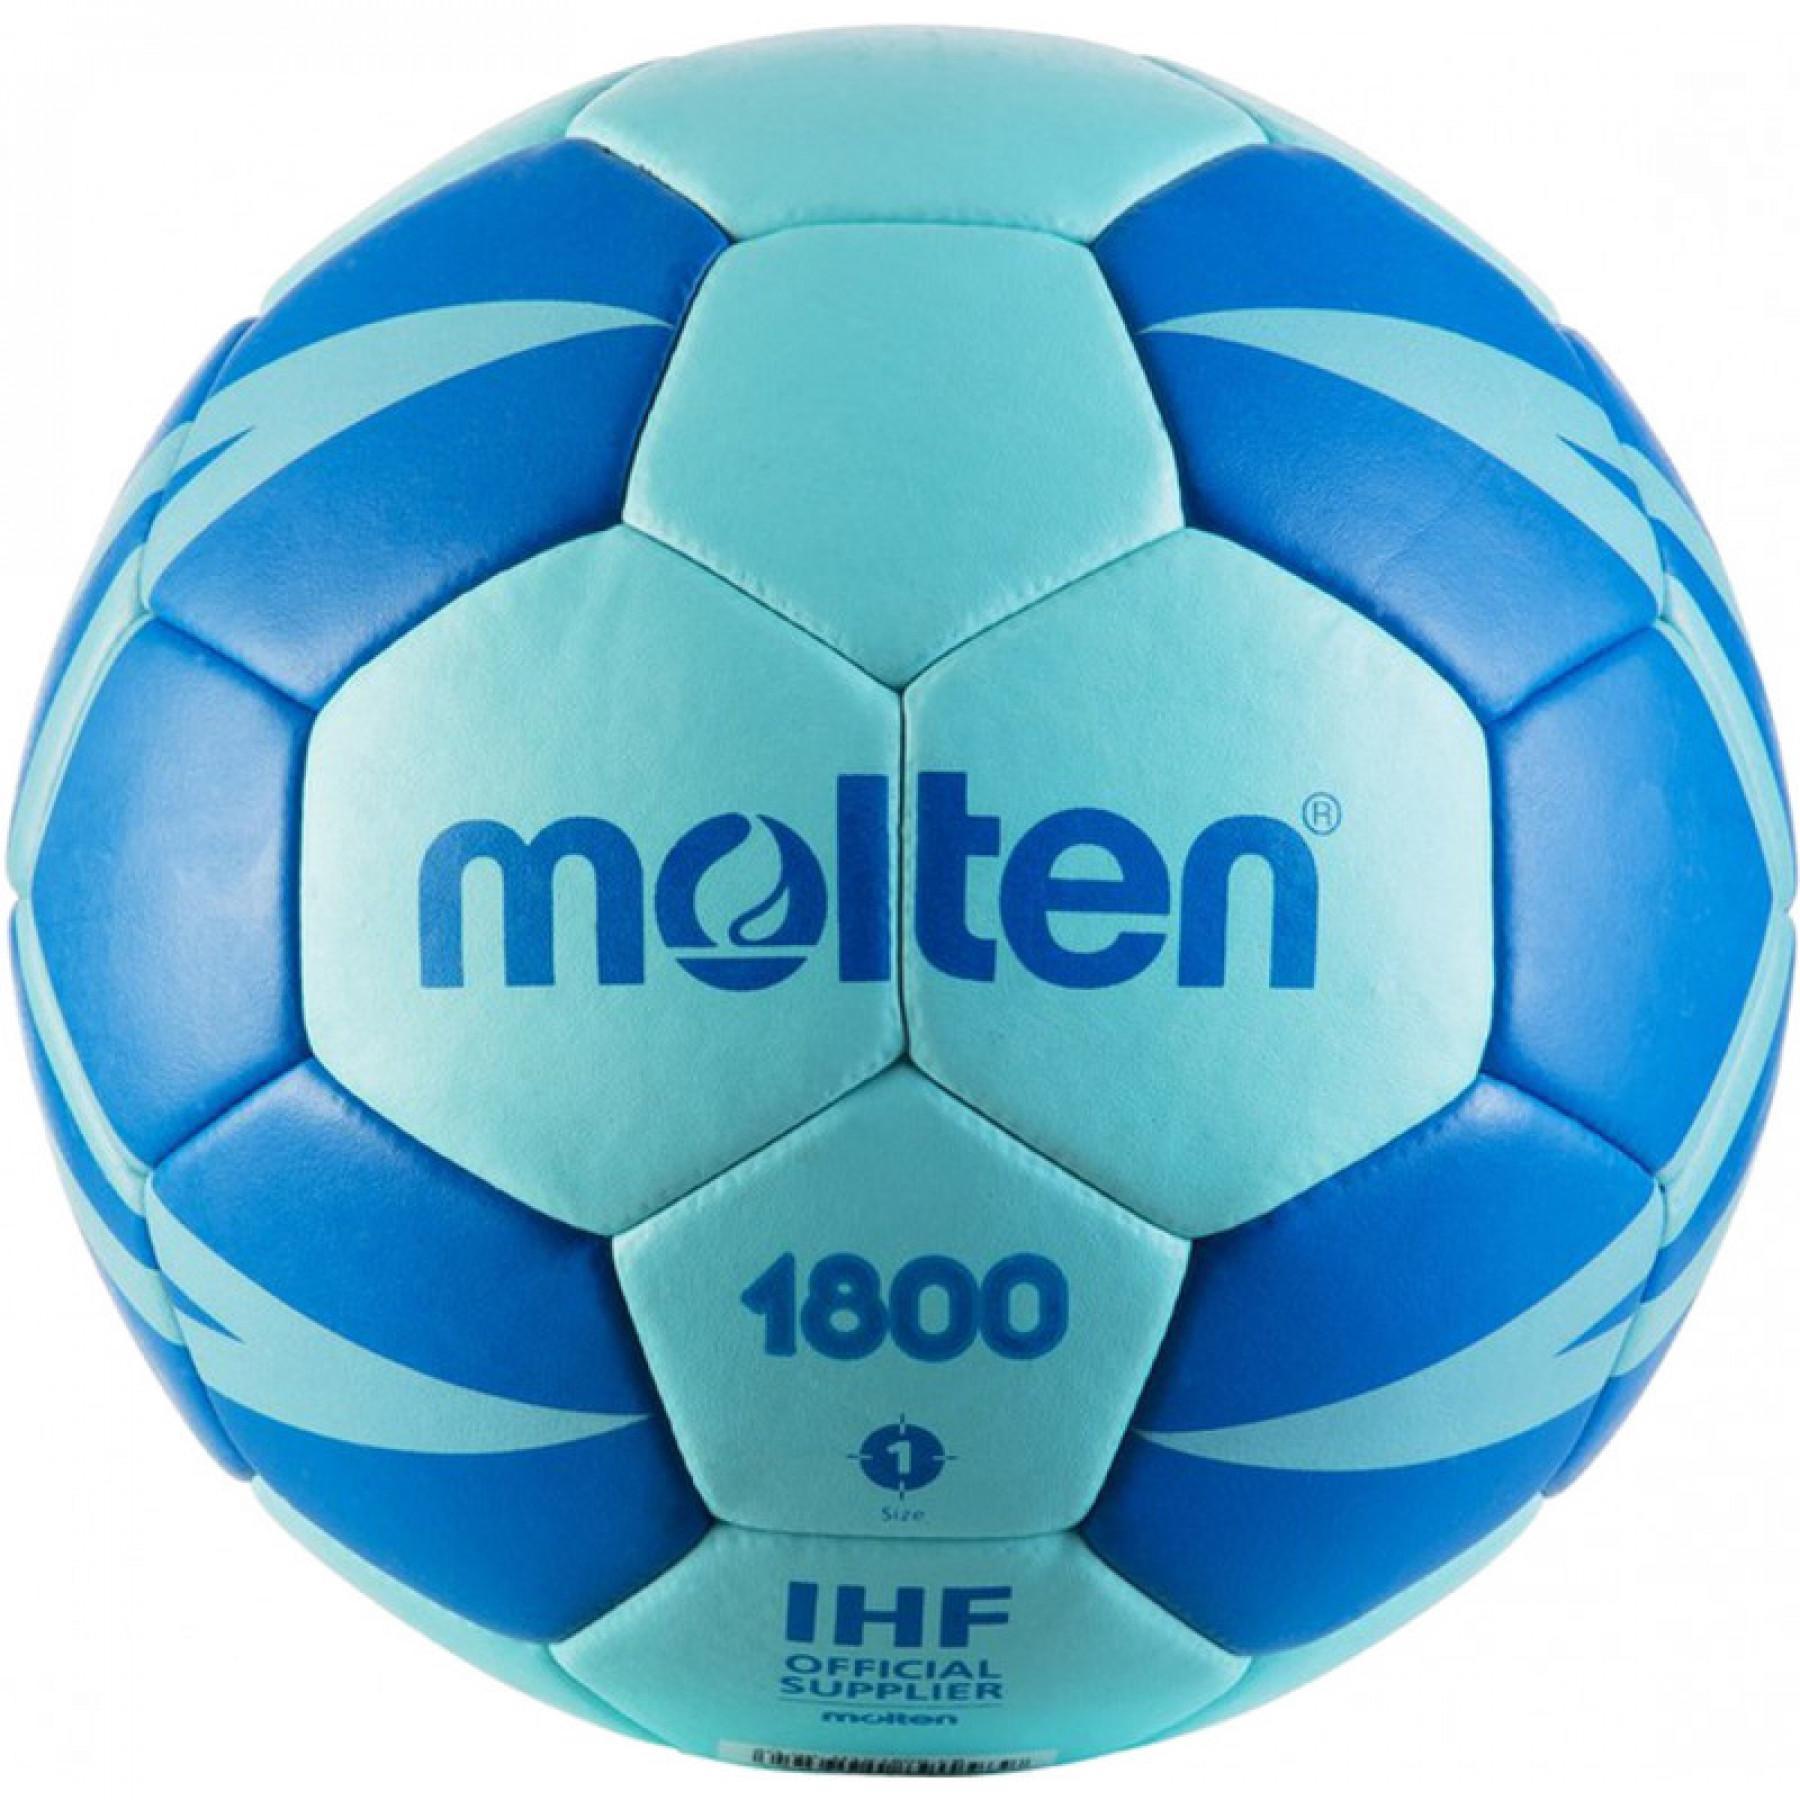 Ballon d'entrainement Molten HXT1800 taille 1